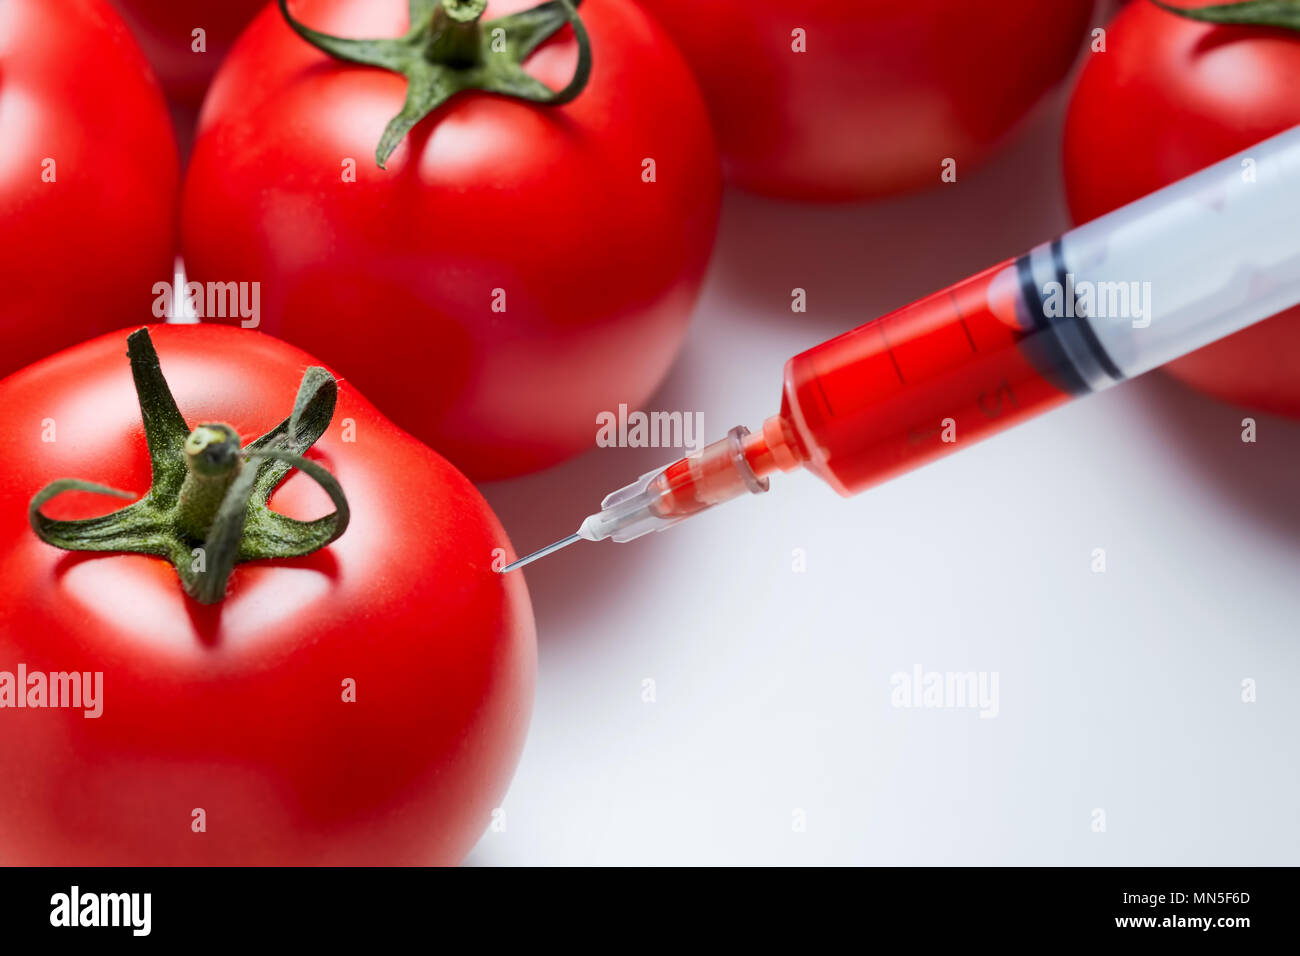 Primer plano de una jeringa de inyectar un líquido rojo de los tomates rojos frescos. Concepto de modificación genética. Foto de stock